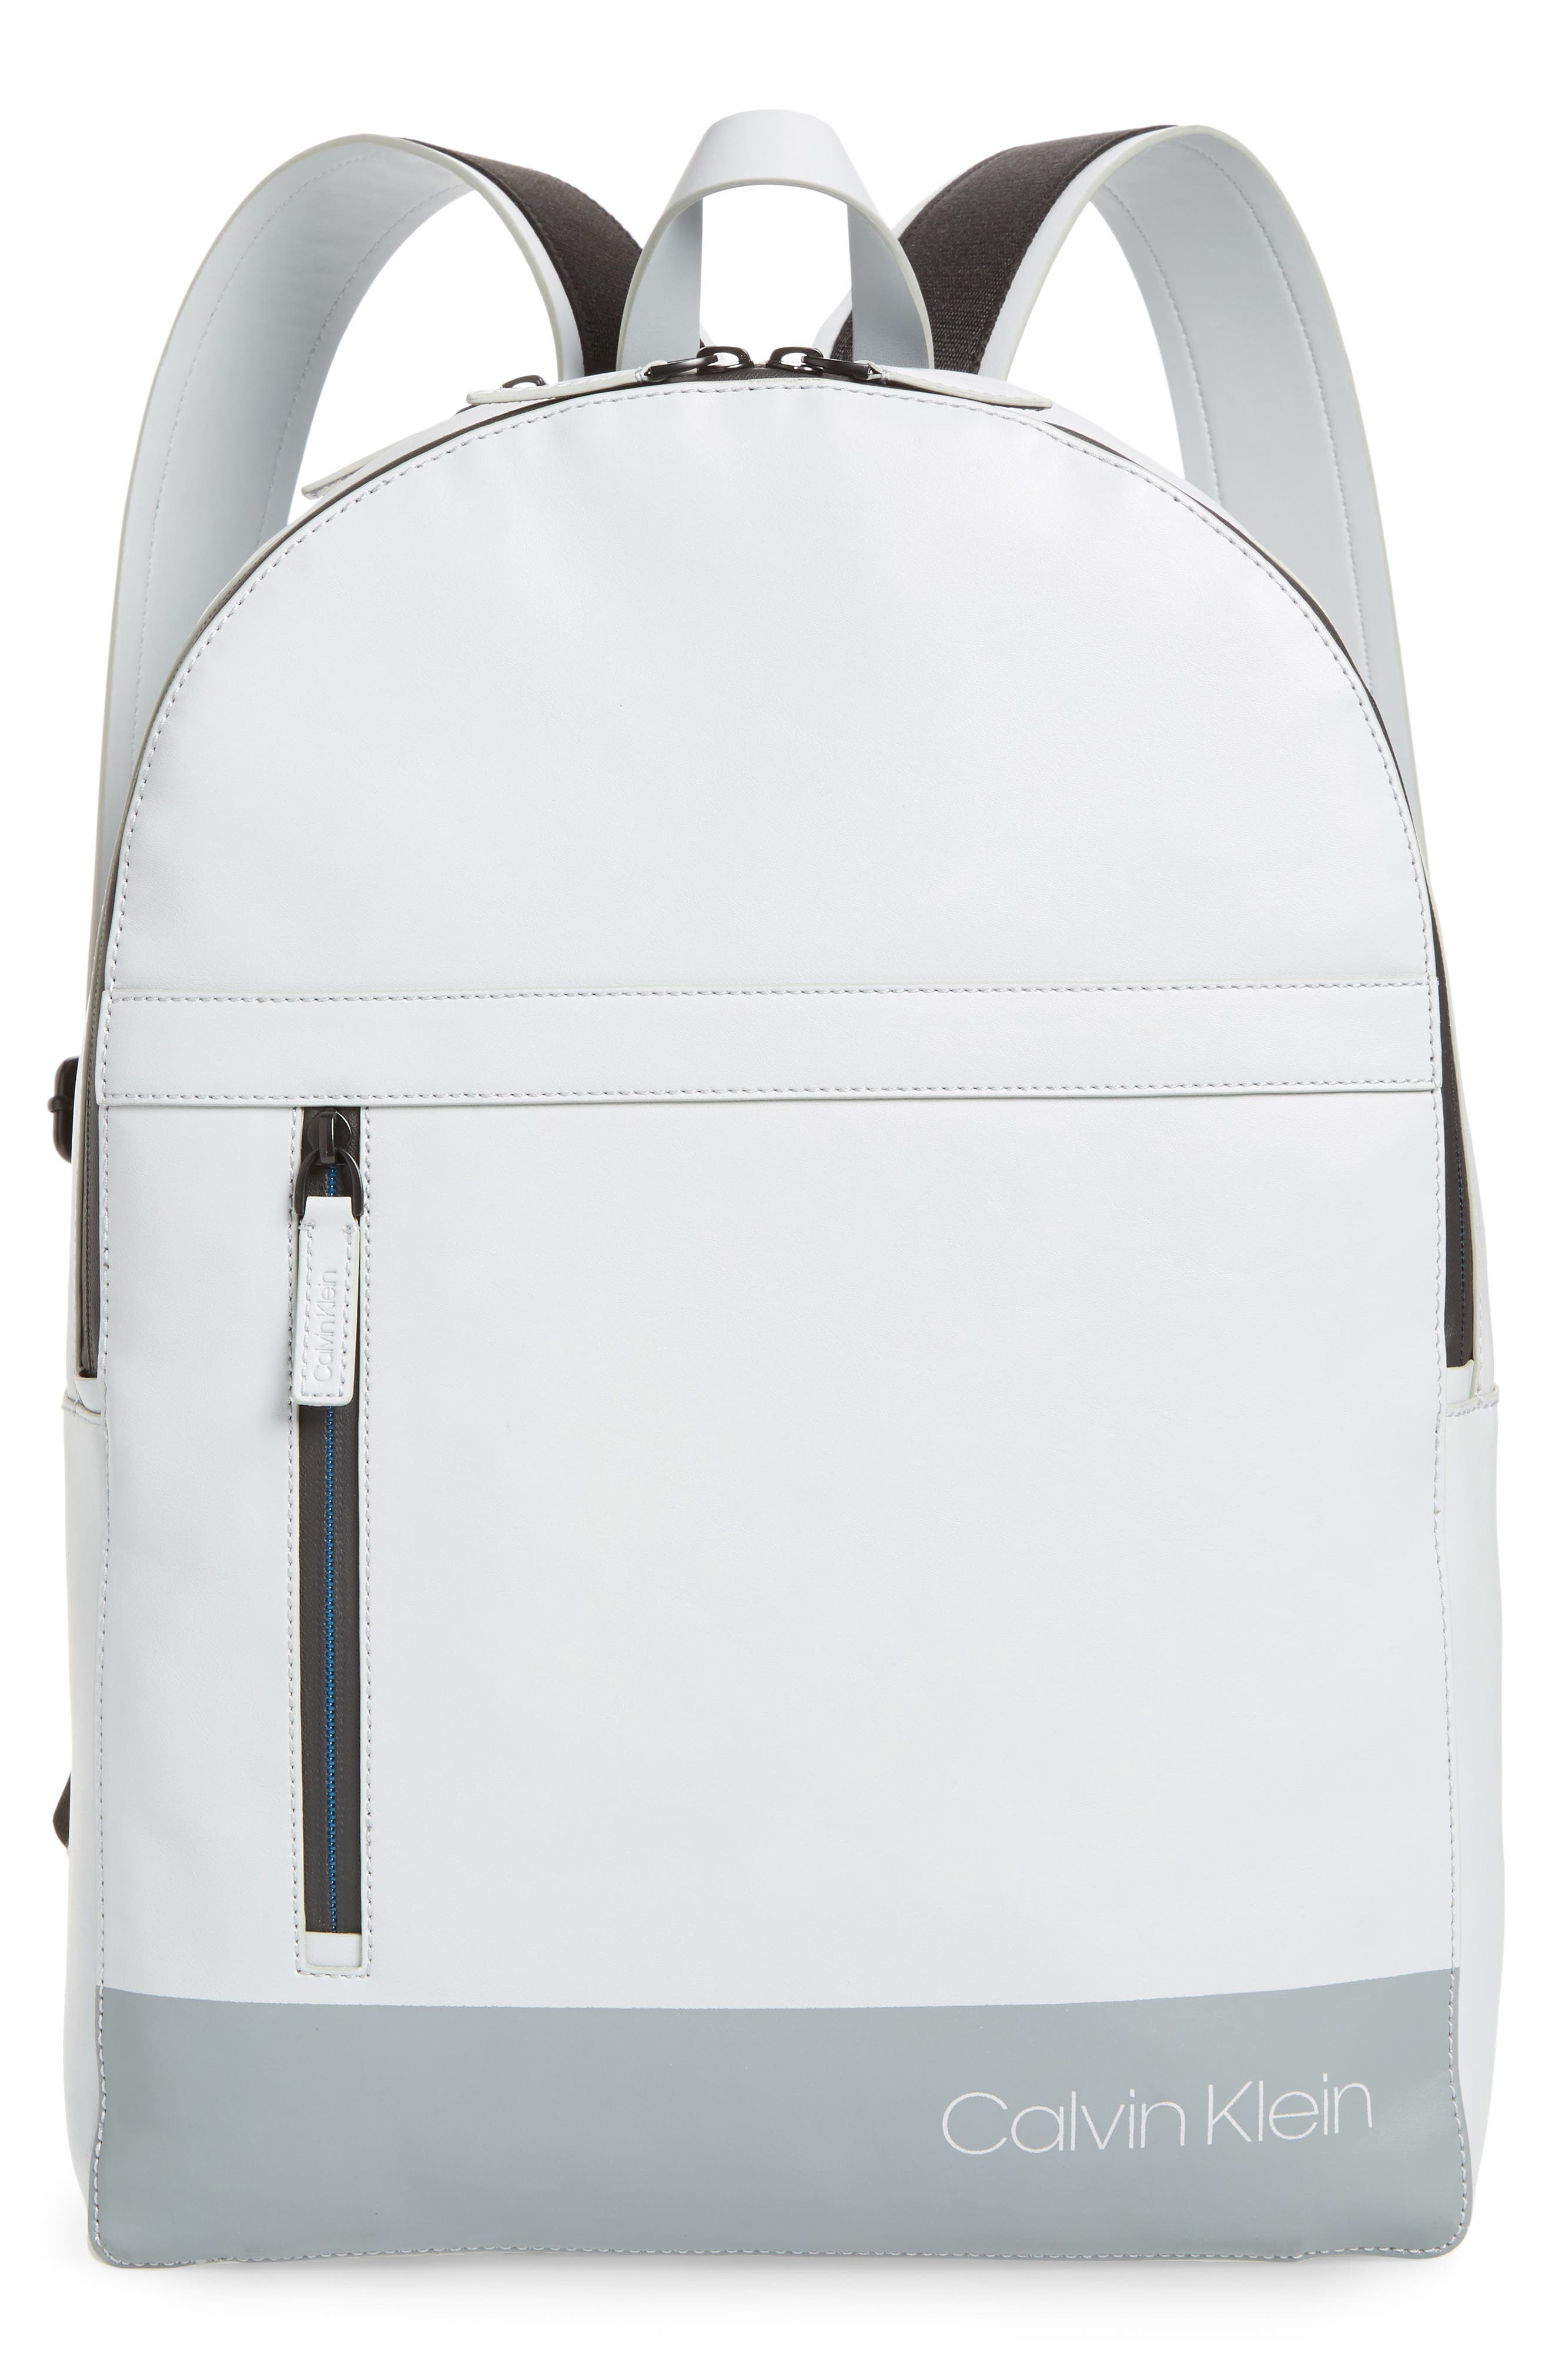 calvin klein backpack white